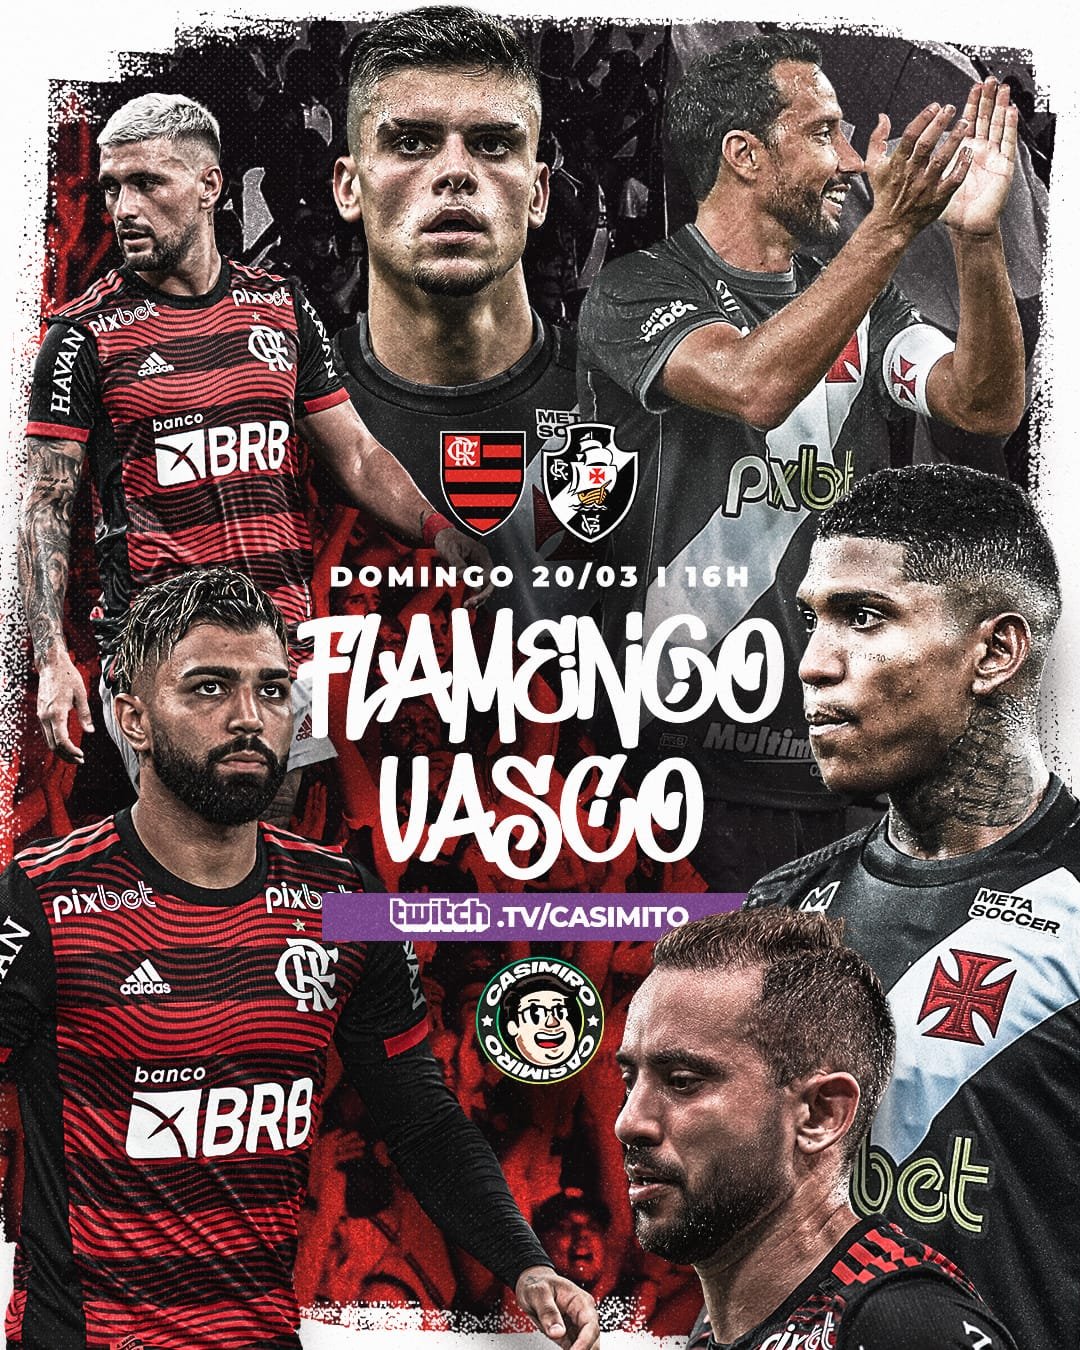 Vasco x Flamengo: como assistir ao clássico na CazéTV ou Twitch